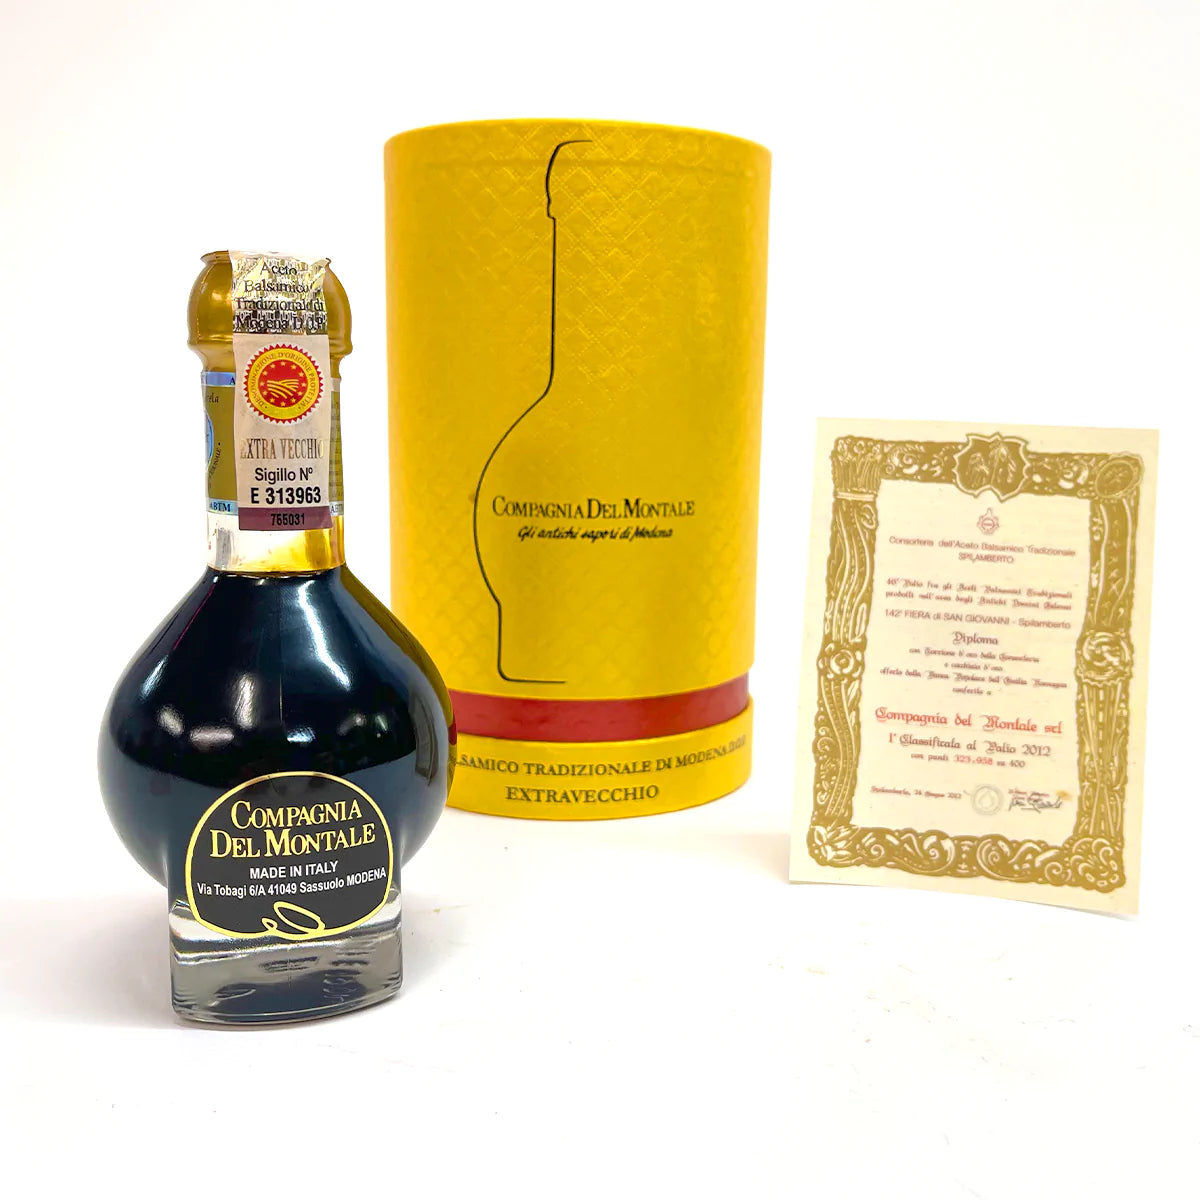 Extravecchio, Aceto Balsamic Tradizionale di Modena DOP in Gold Box AFF-002